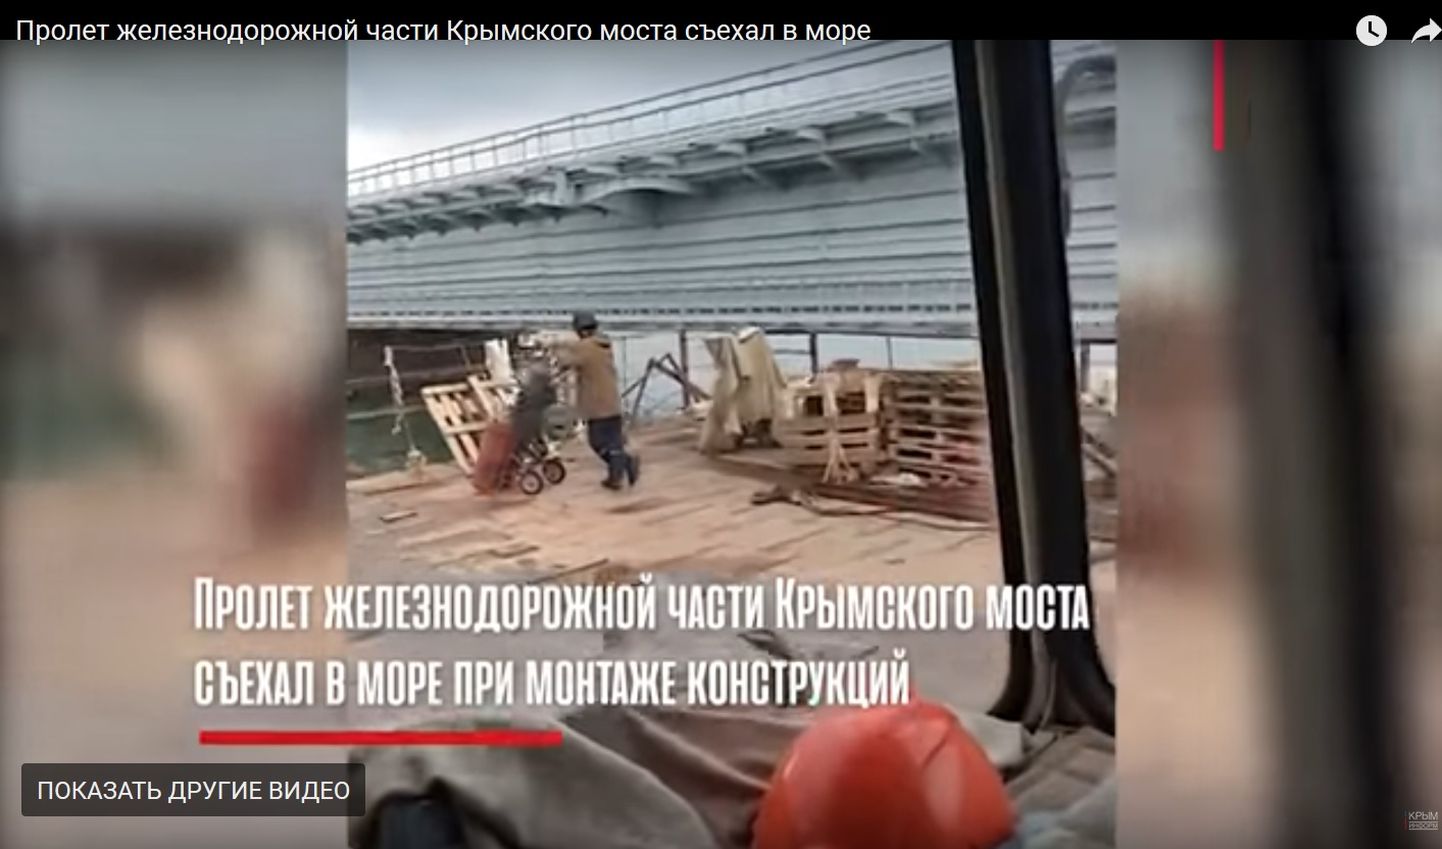 Один из пролетов строящейся железнодорожной части Крымского моста упал на мелководье.